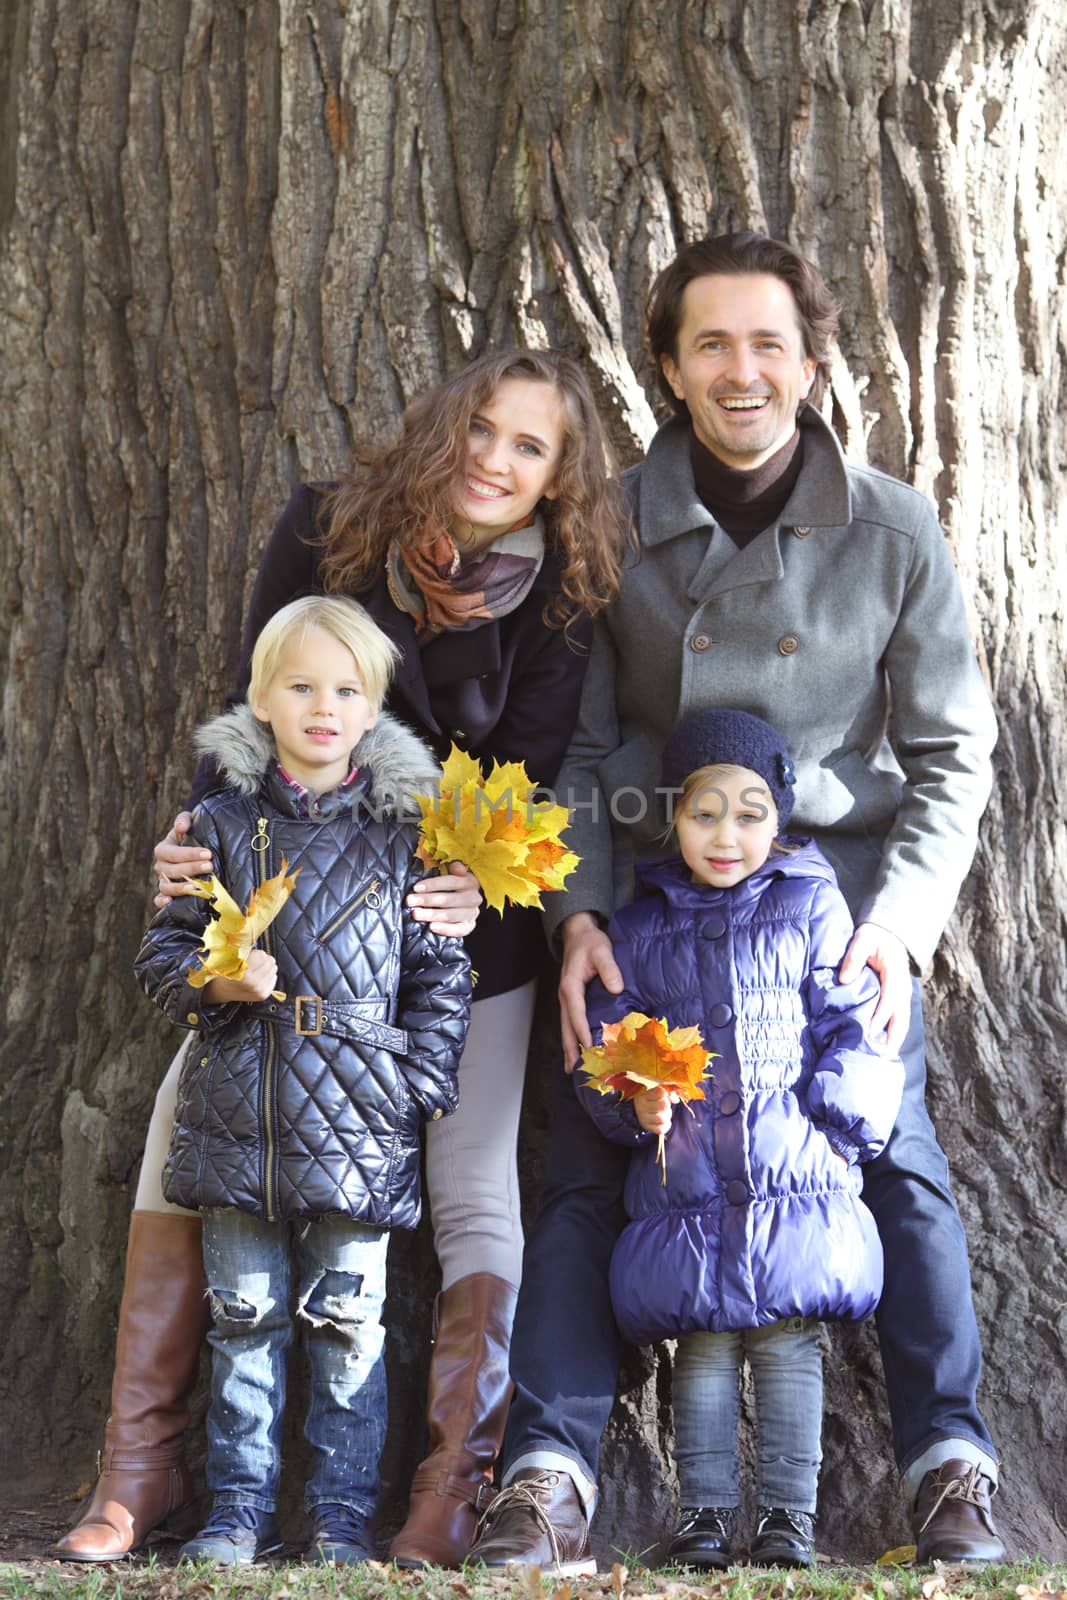 Happy family in autumn park near big tree trunk